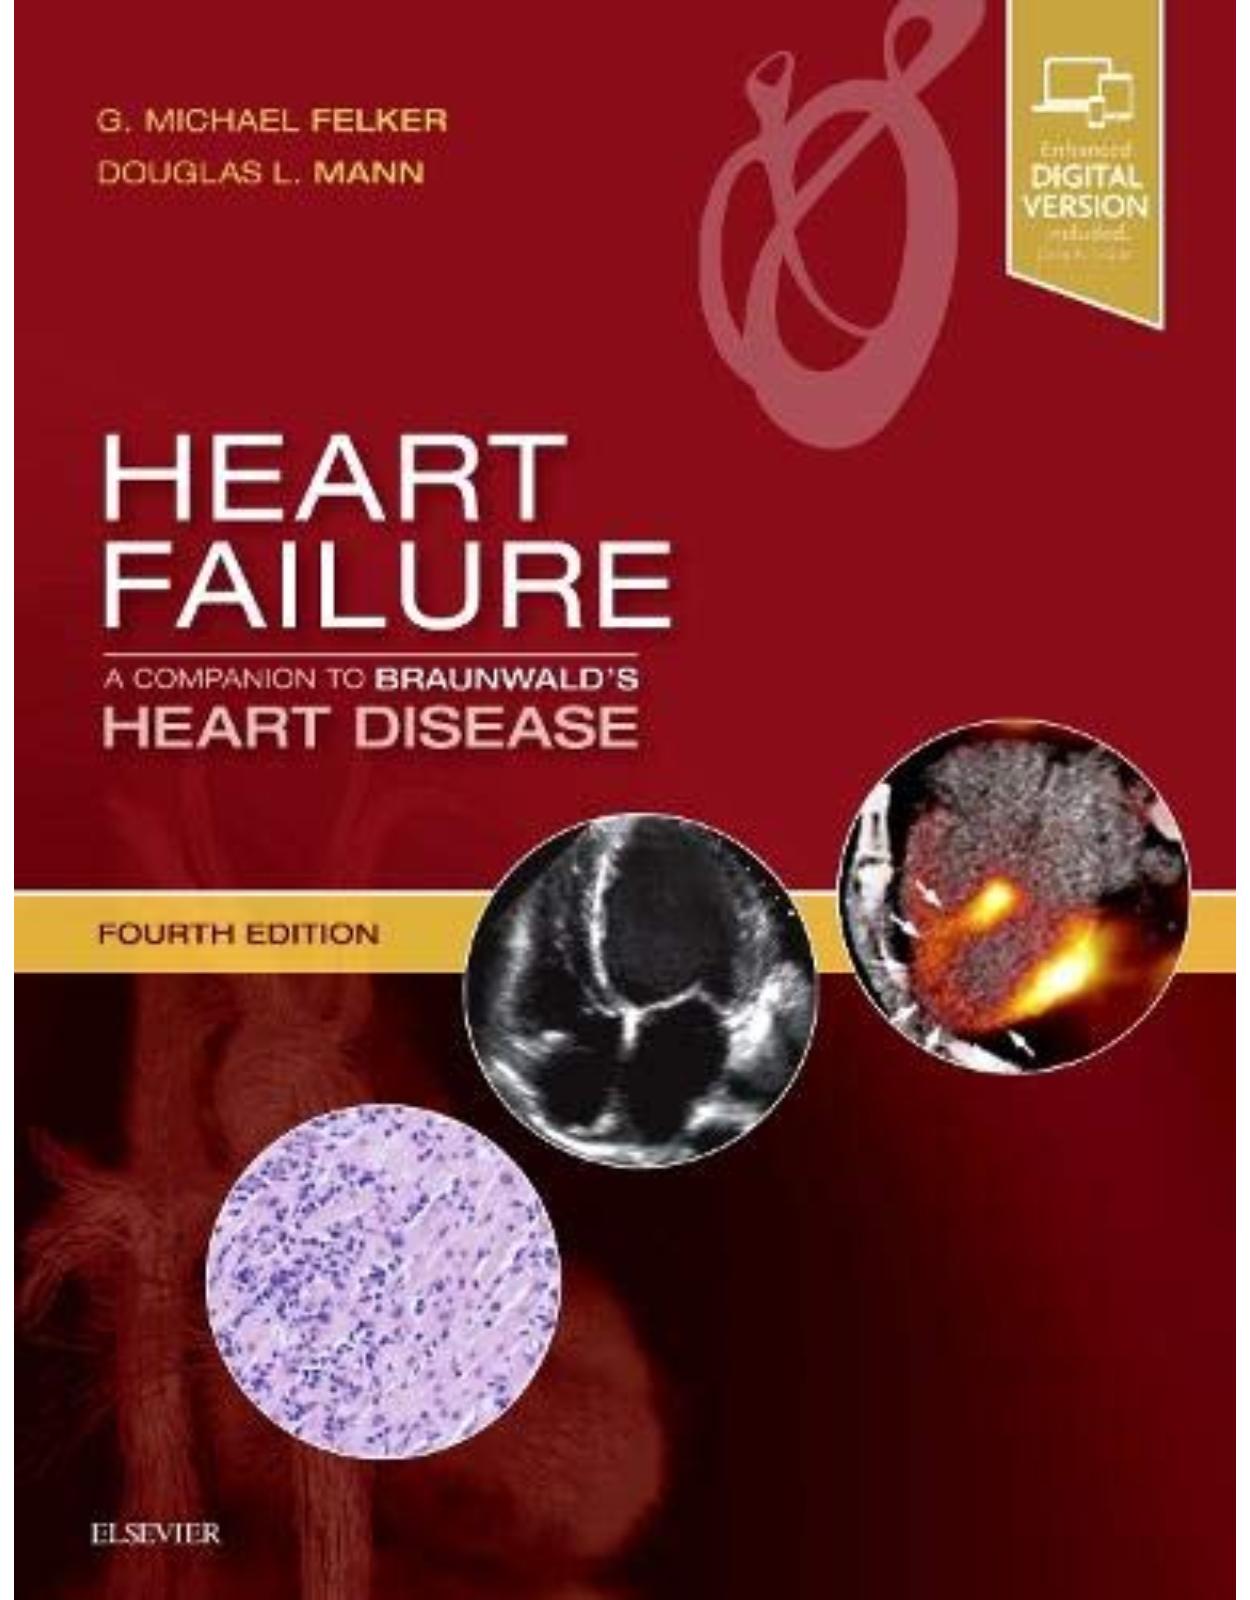 Heart Failure: A Companion to Braunwald’s Heart Disease, 4th Edition